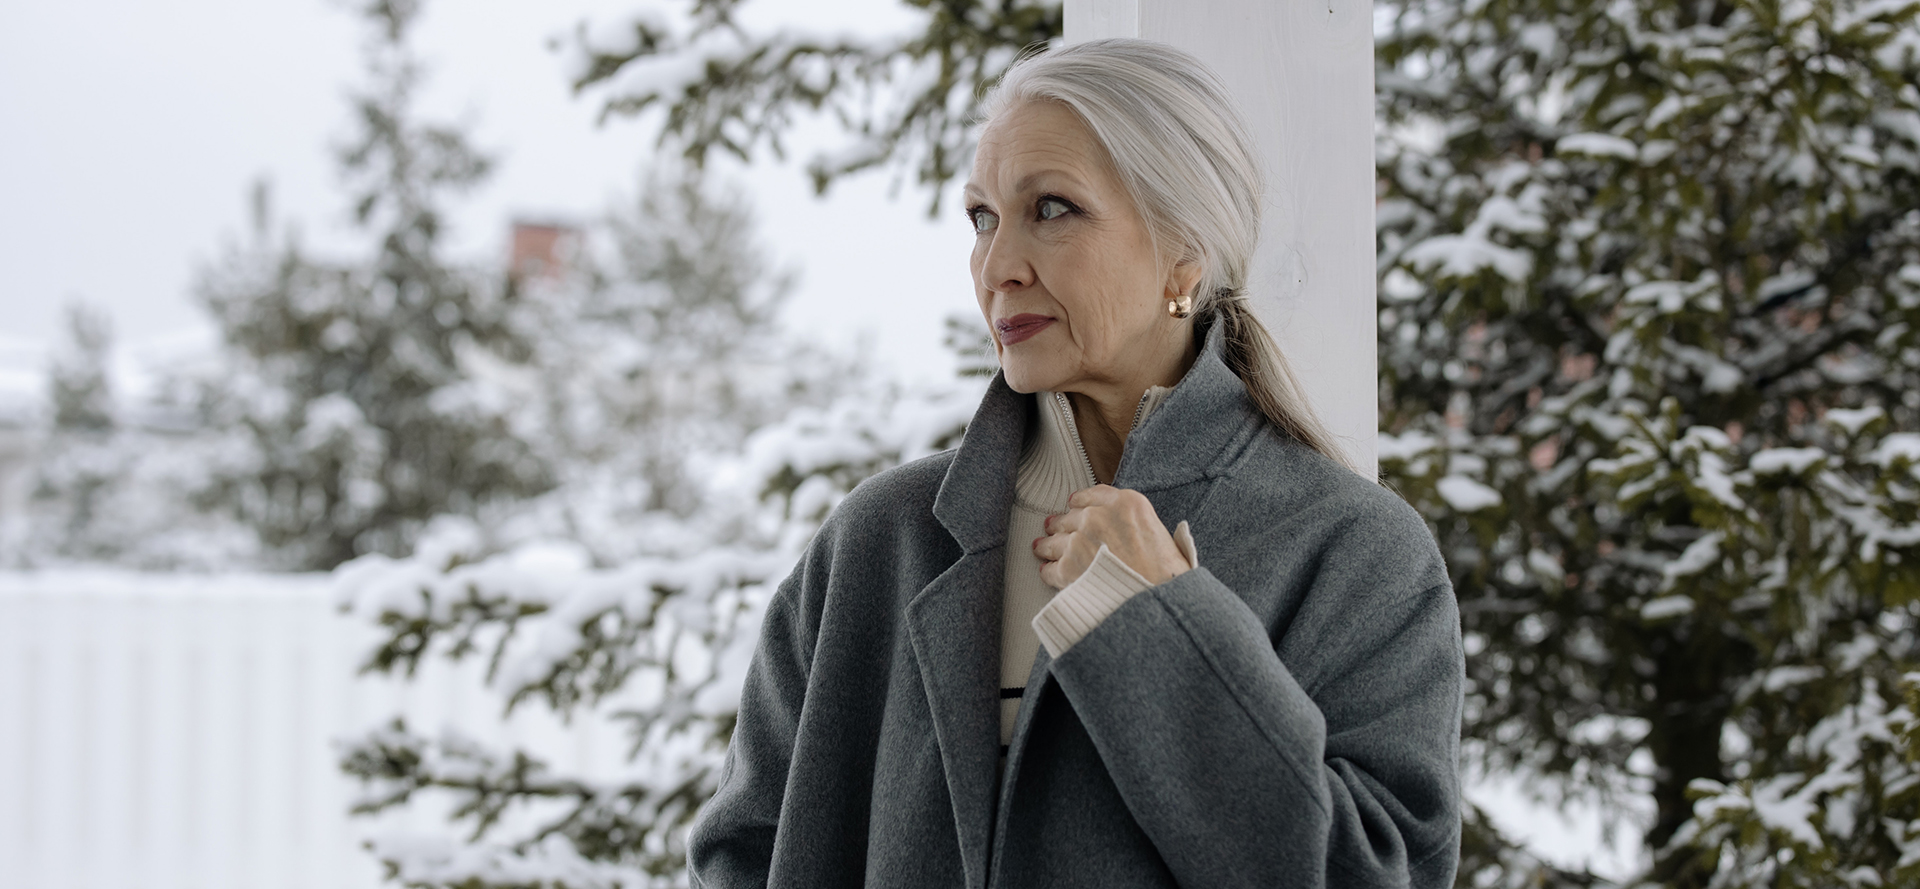 La abuela con un abrigo gris frente al paisaje invernal.